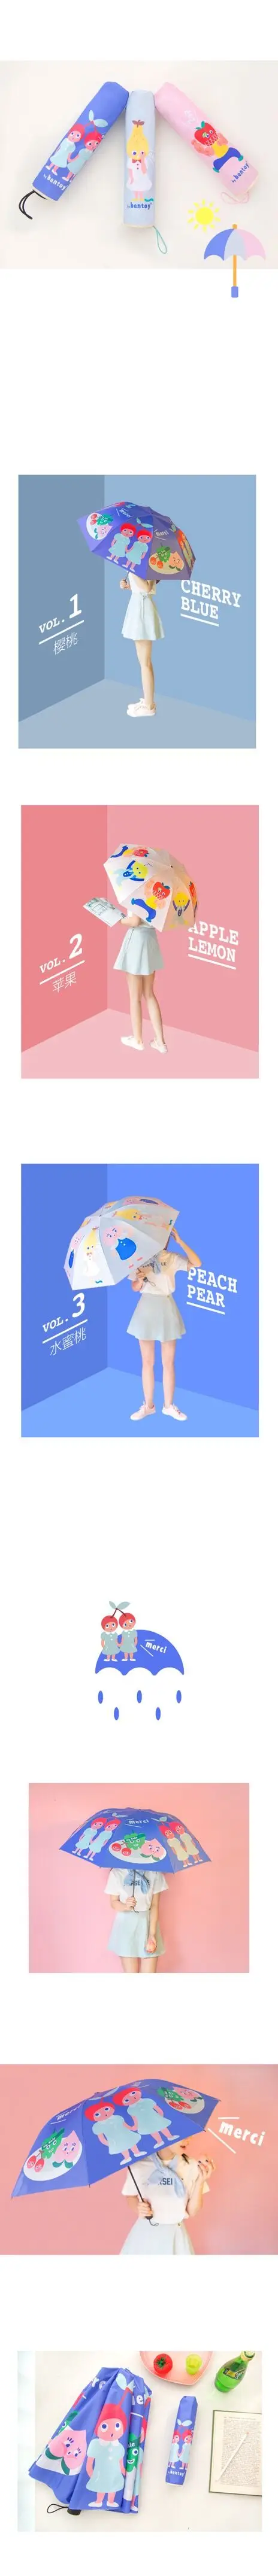 Bentoy Milkjoy зонтик мультфильм фрукты Складной Милый обувь для девочек Защита от солнца дождь УФ Защита Зонты продажи для женщин подарок BD best подарок